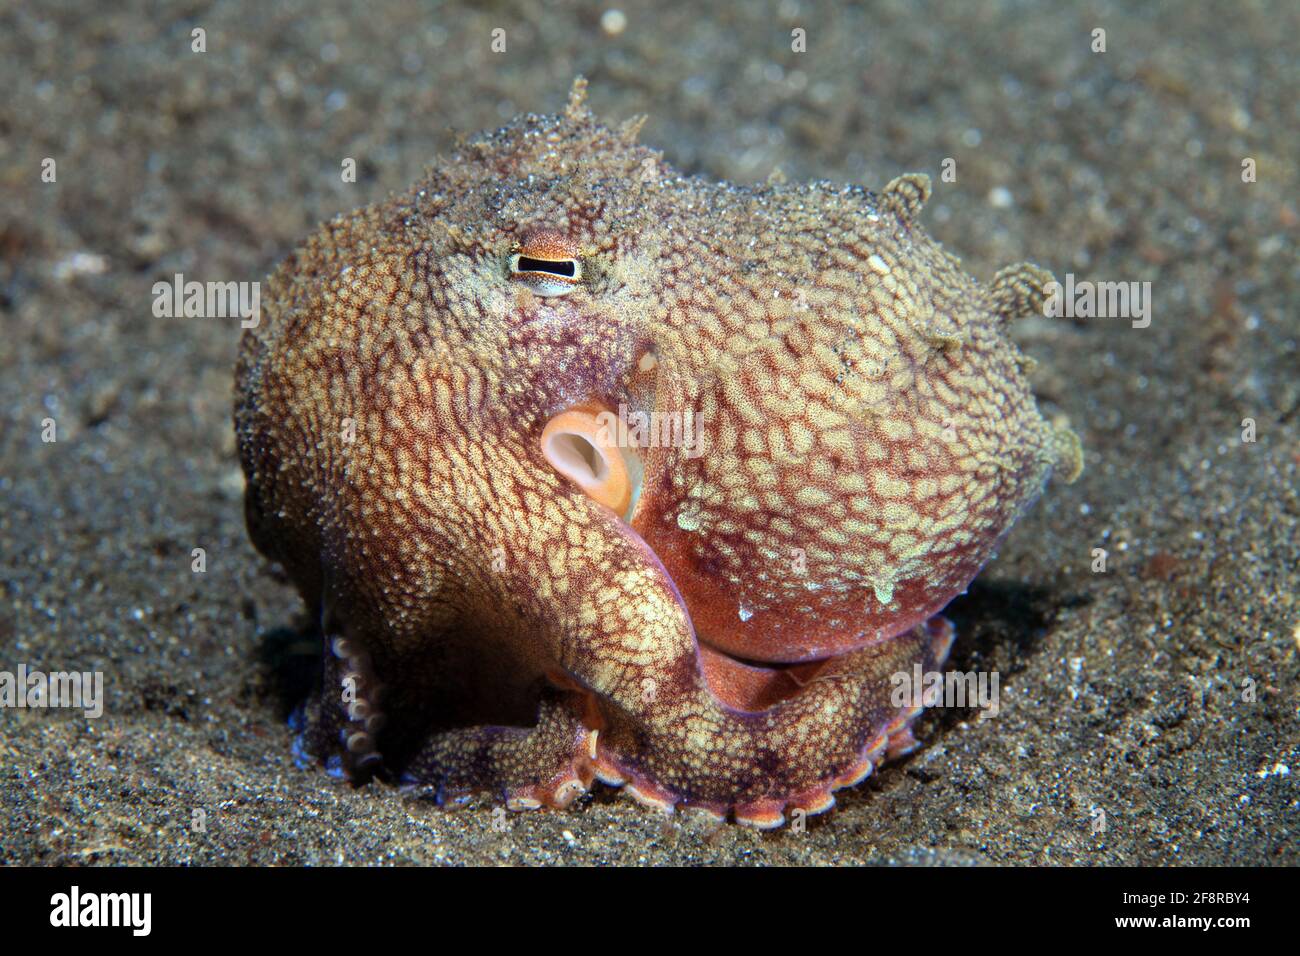 Kokosnuss Krake (Octopus marginatus), (Lembeh, Sulawesi, Indonesien) - Coconut octopus (Lembeh, Sulawesi, Indonesia) Stock Photo